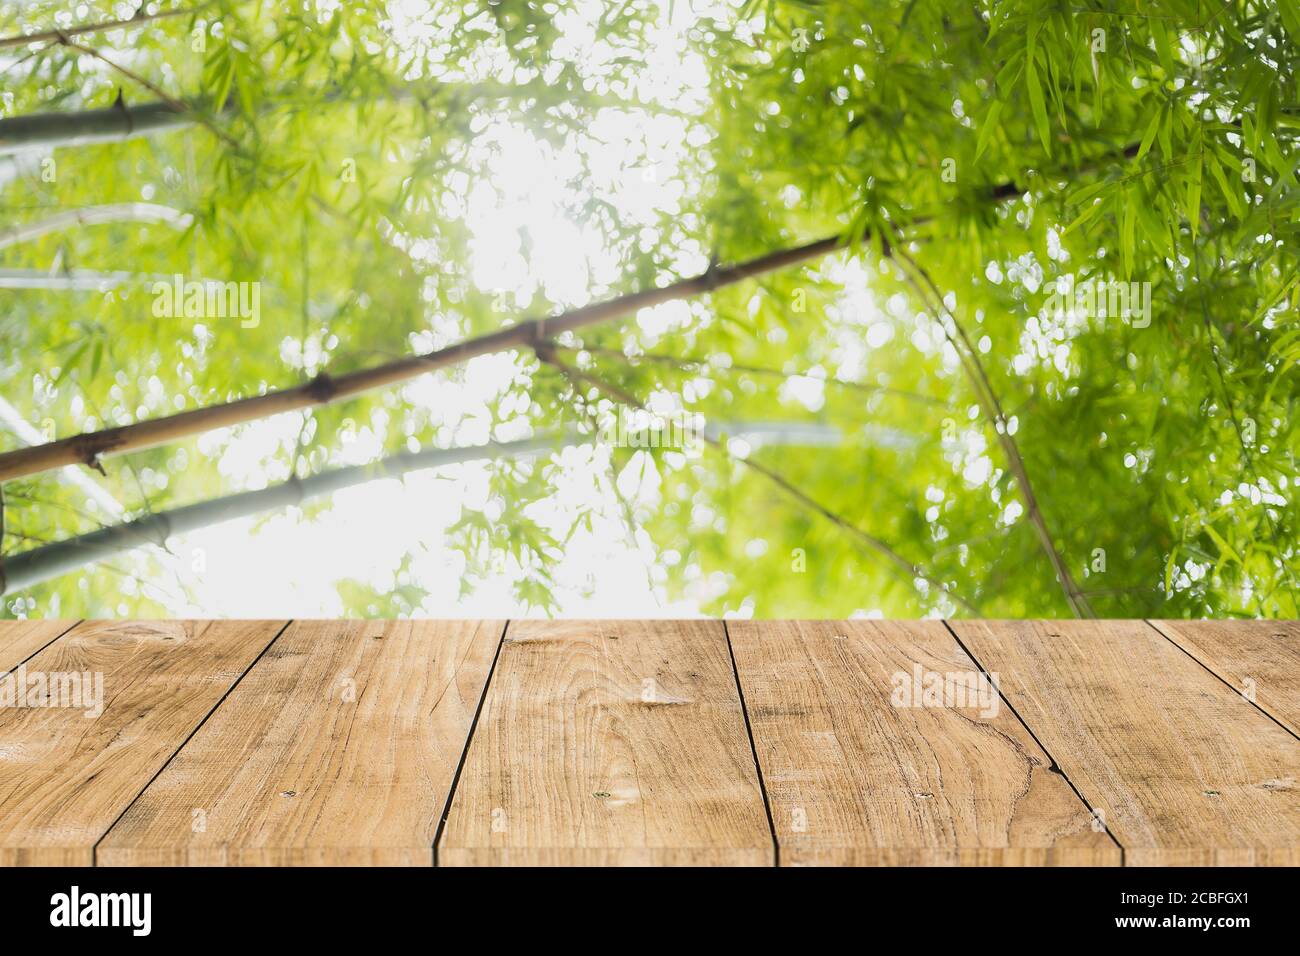 blur albero verde foresta di bambù con tavolo in legno per prodotti montaggio sfondo pubblicitario Foto Stock